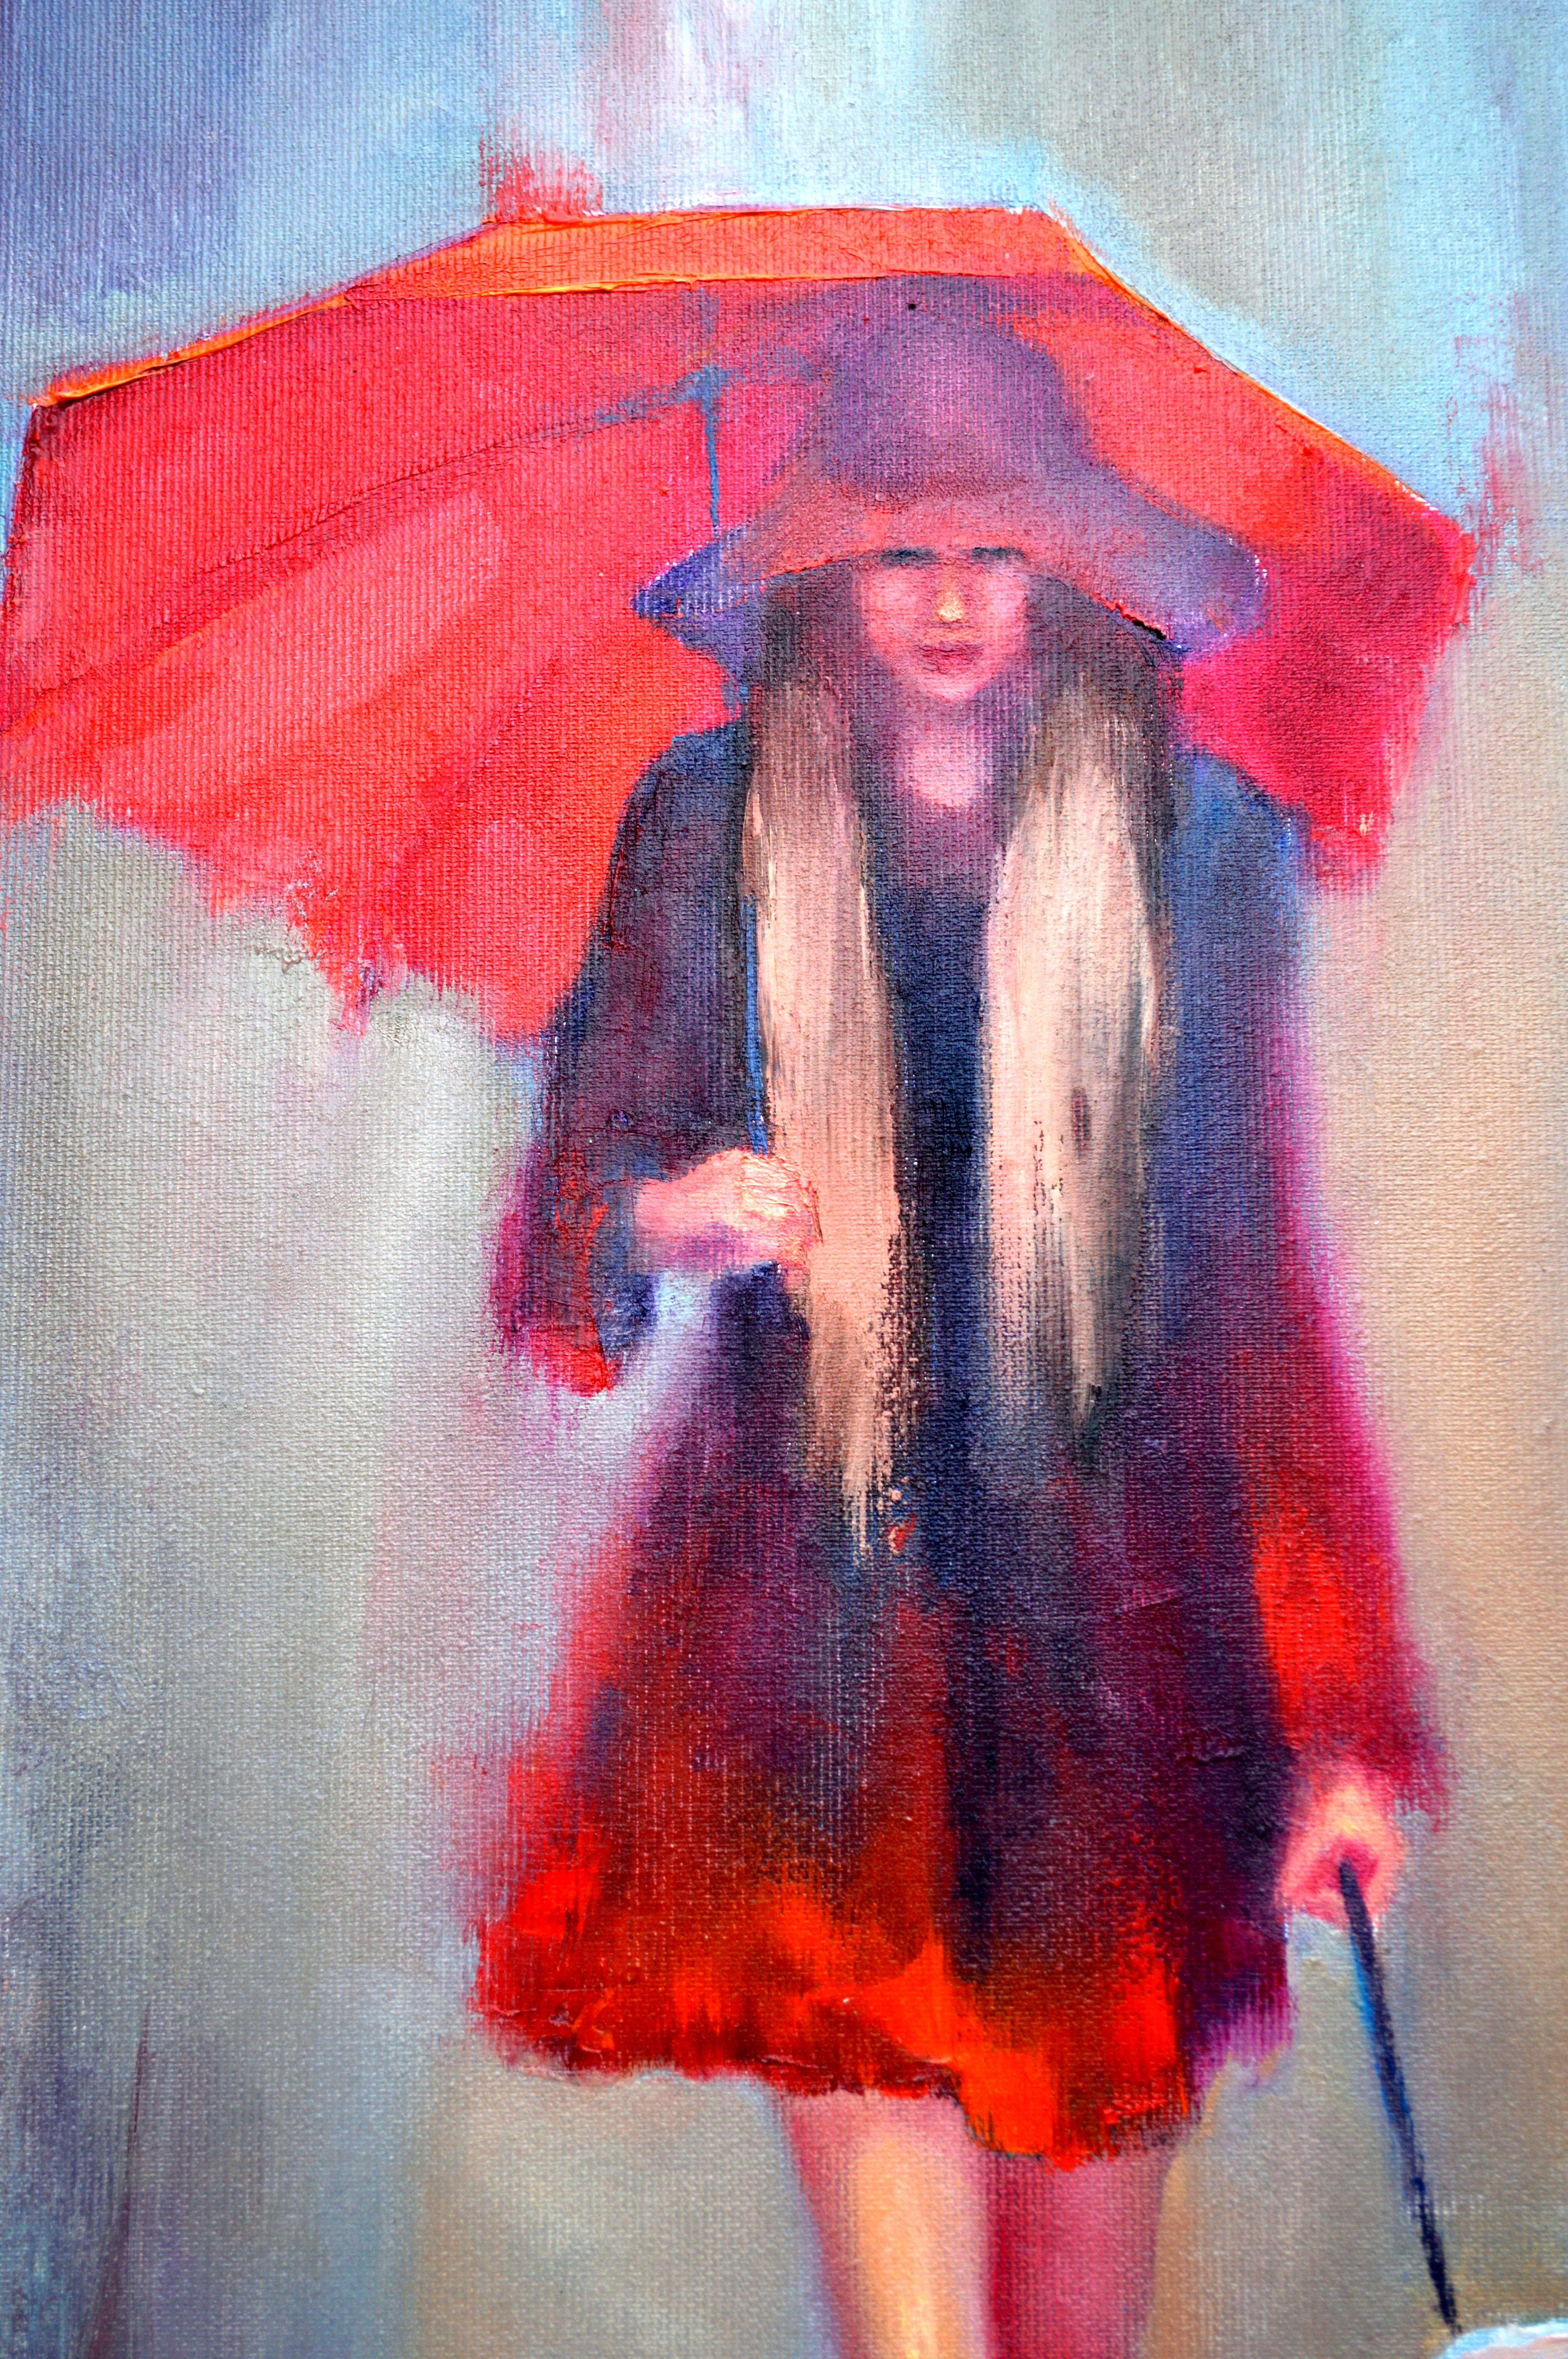 In diesem Ölgemälde habe ich den Expressionismus mit einem Hauch von Impressionismus und Realismus vermischt, um einen Moment heiterer Zweisamkeit inmitten des Regens der Natur einzufangen. Der leuchtend rote Regenschirm symbolisiert ein Leuchtfeuer